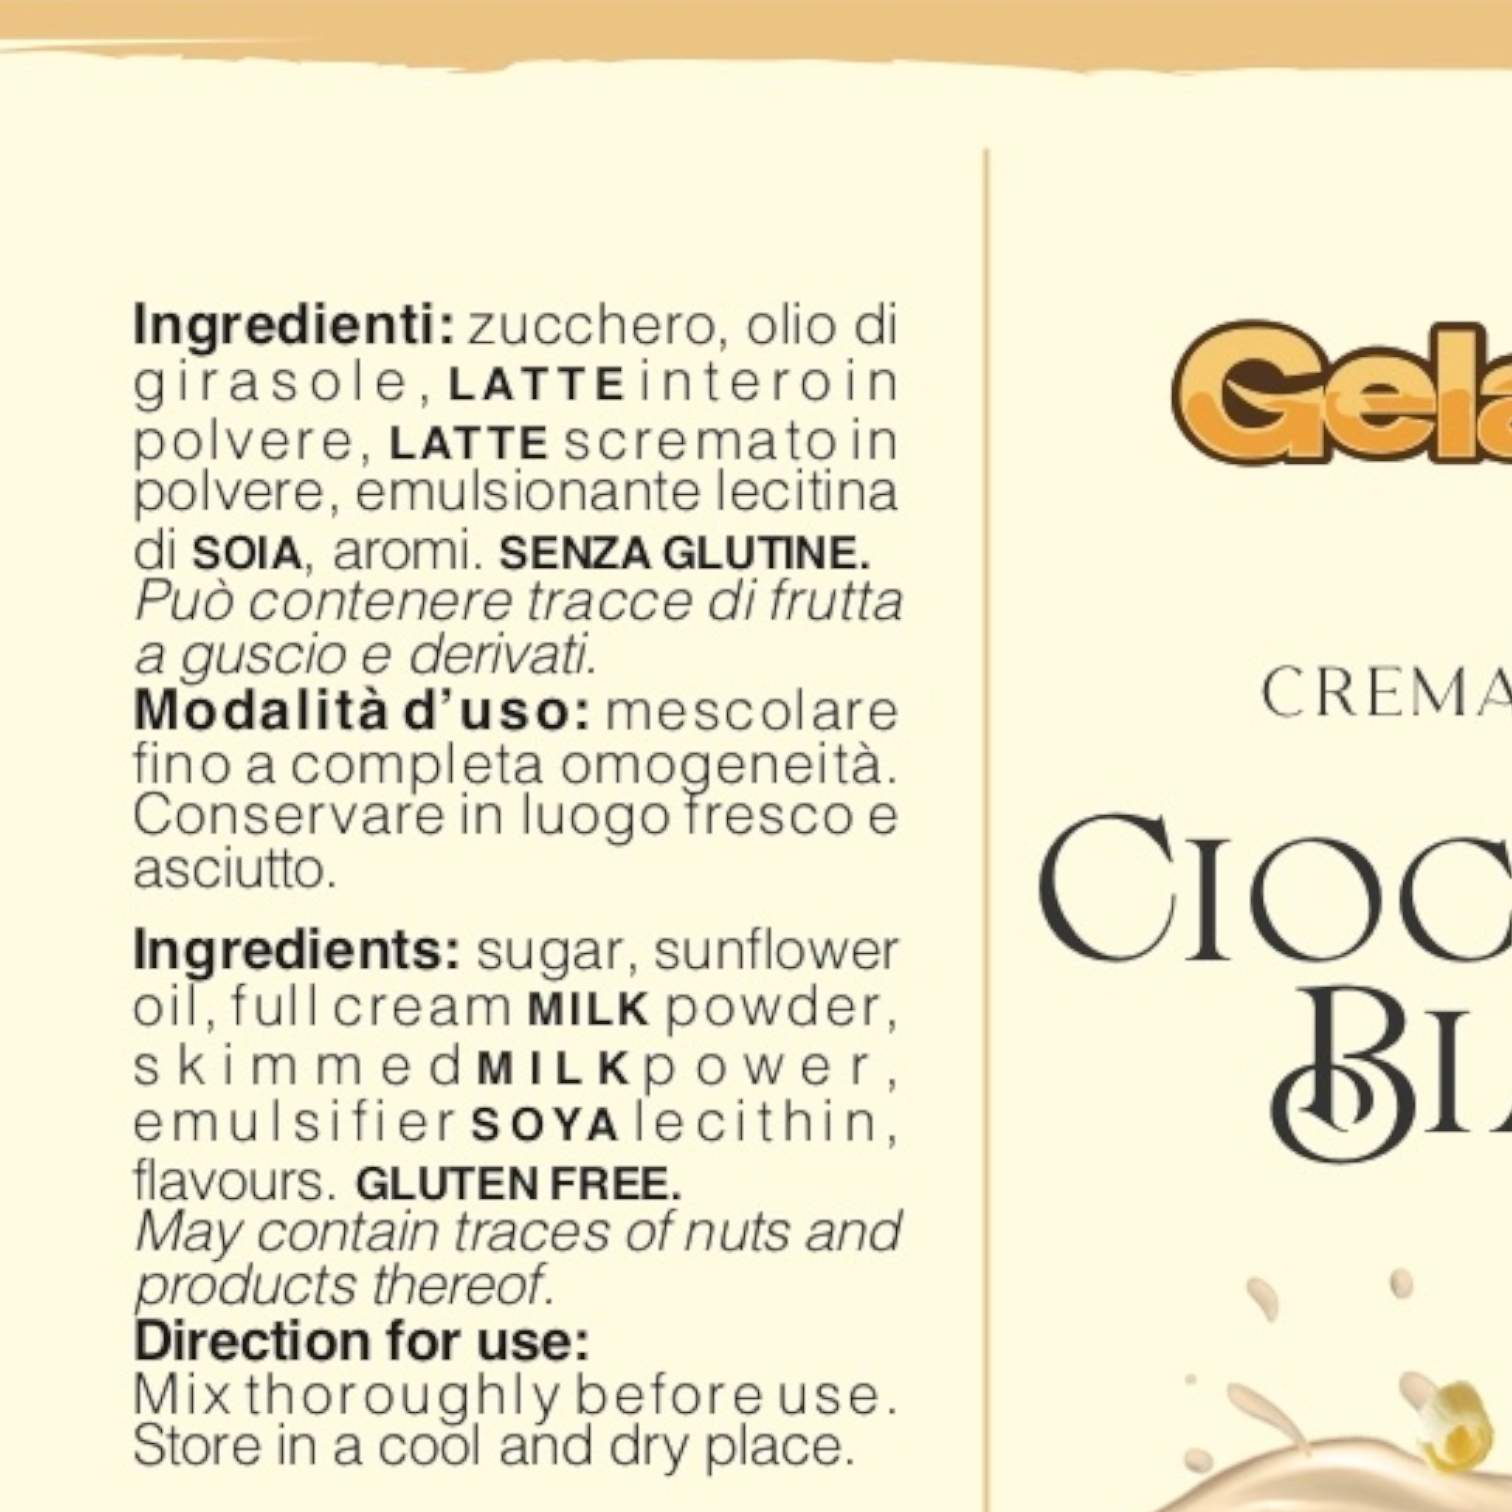 Ricarica Crema Cioccolato Bianco per "Fontana ChocoParty"